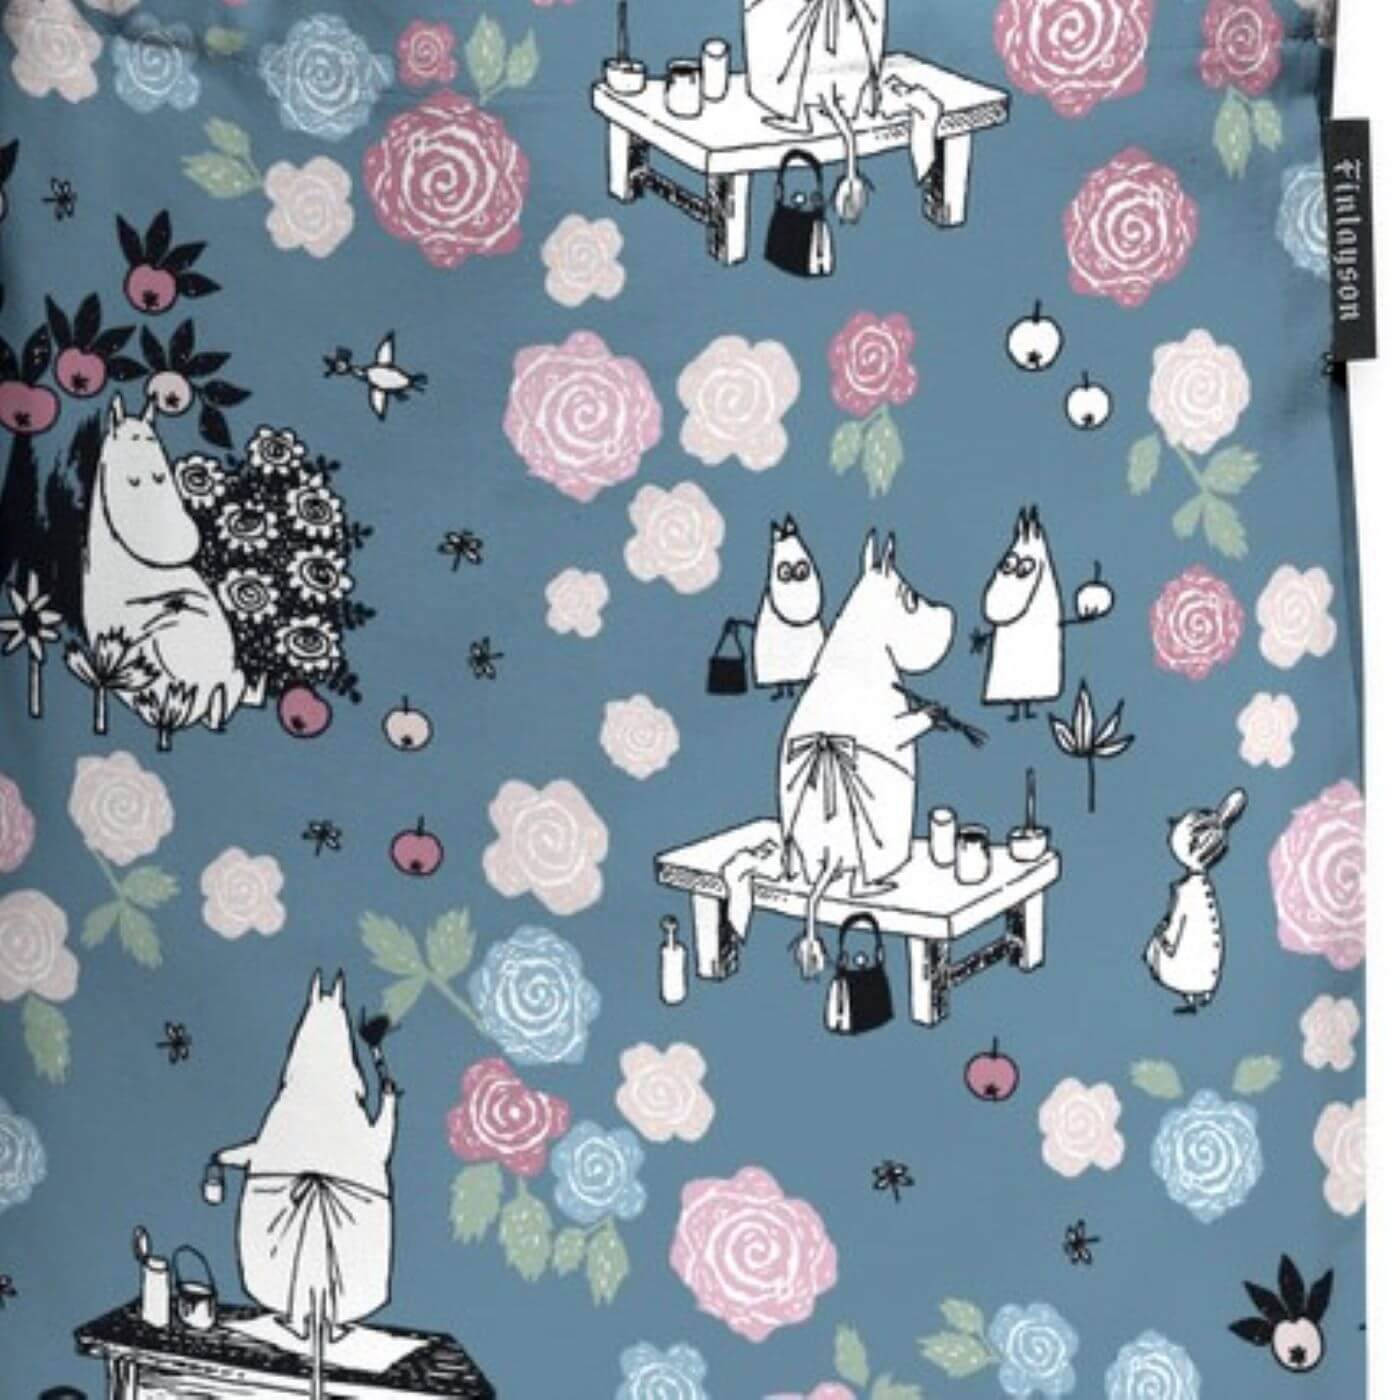 Torba tekstylna MUMINKI. Wzór w muminki i kolorowe kwiaty na szaro niebieskim tle. Skandynawski design